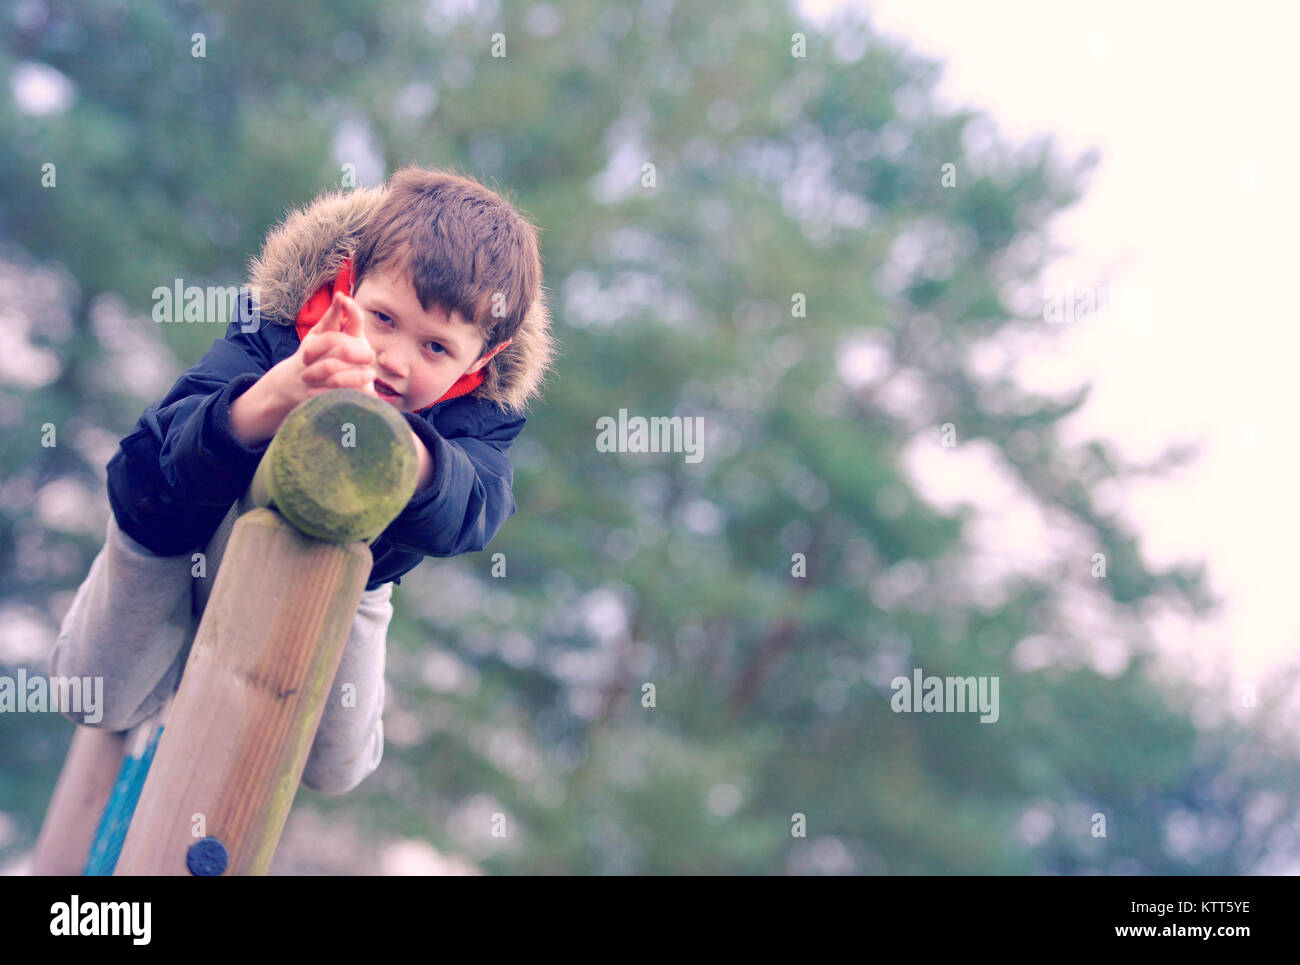 Boy on a climbing frame pretending to shoot a gun Stock Photo